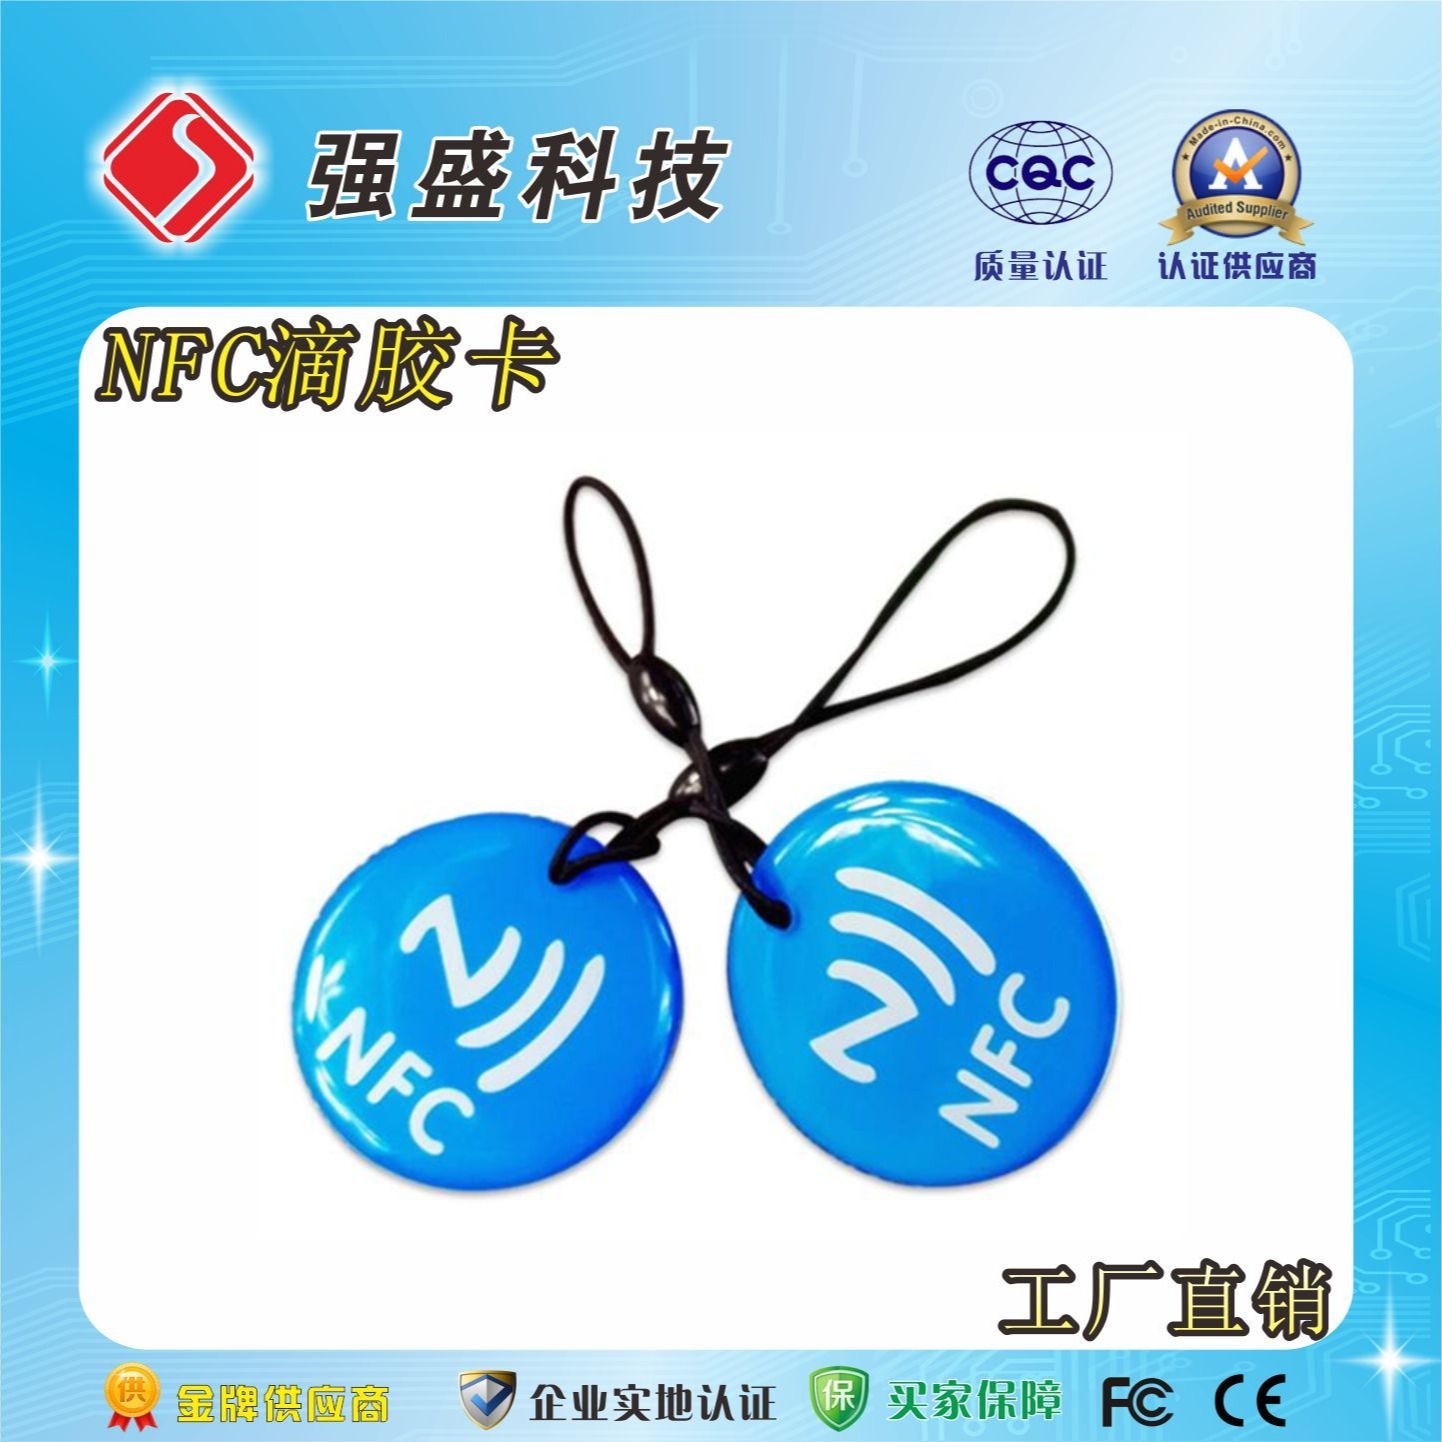 广州强盛rfid卡厂家定制、门禁卡IC射频卡定制、NFC213巡检卡定制